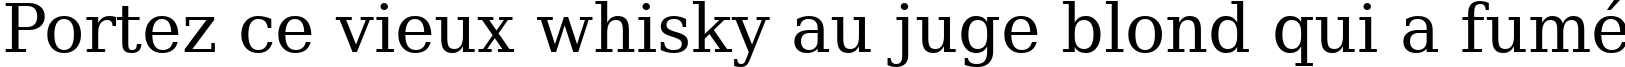 Пример написания шрифтом ae_Tarablus текста на французском